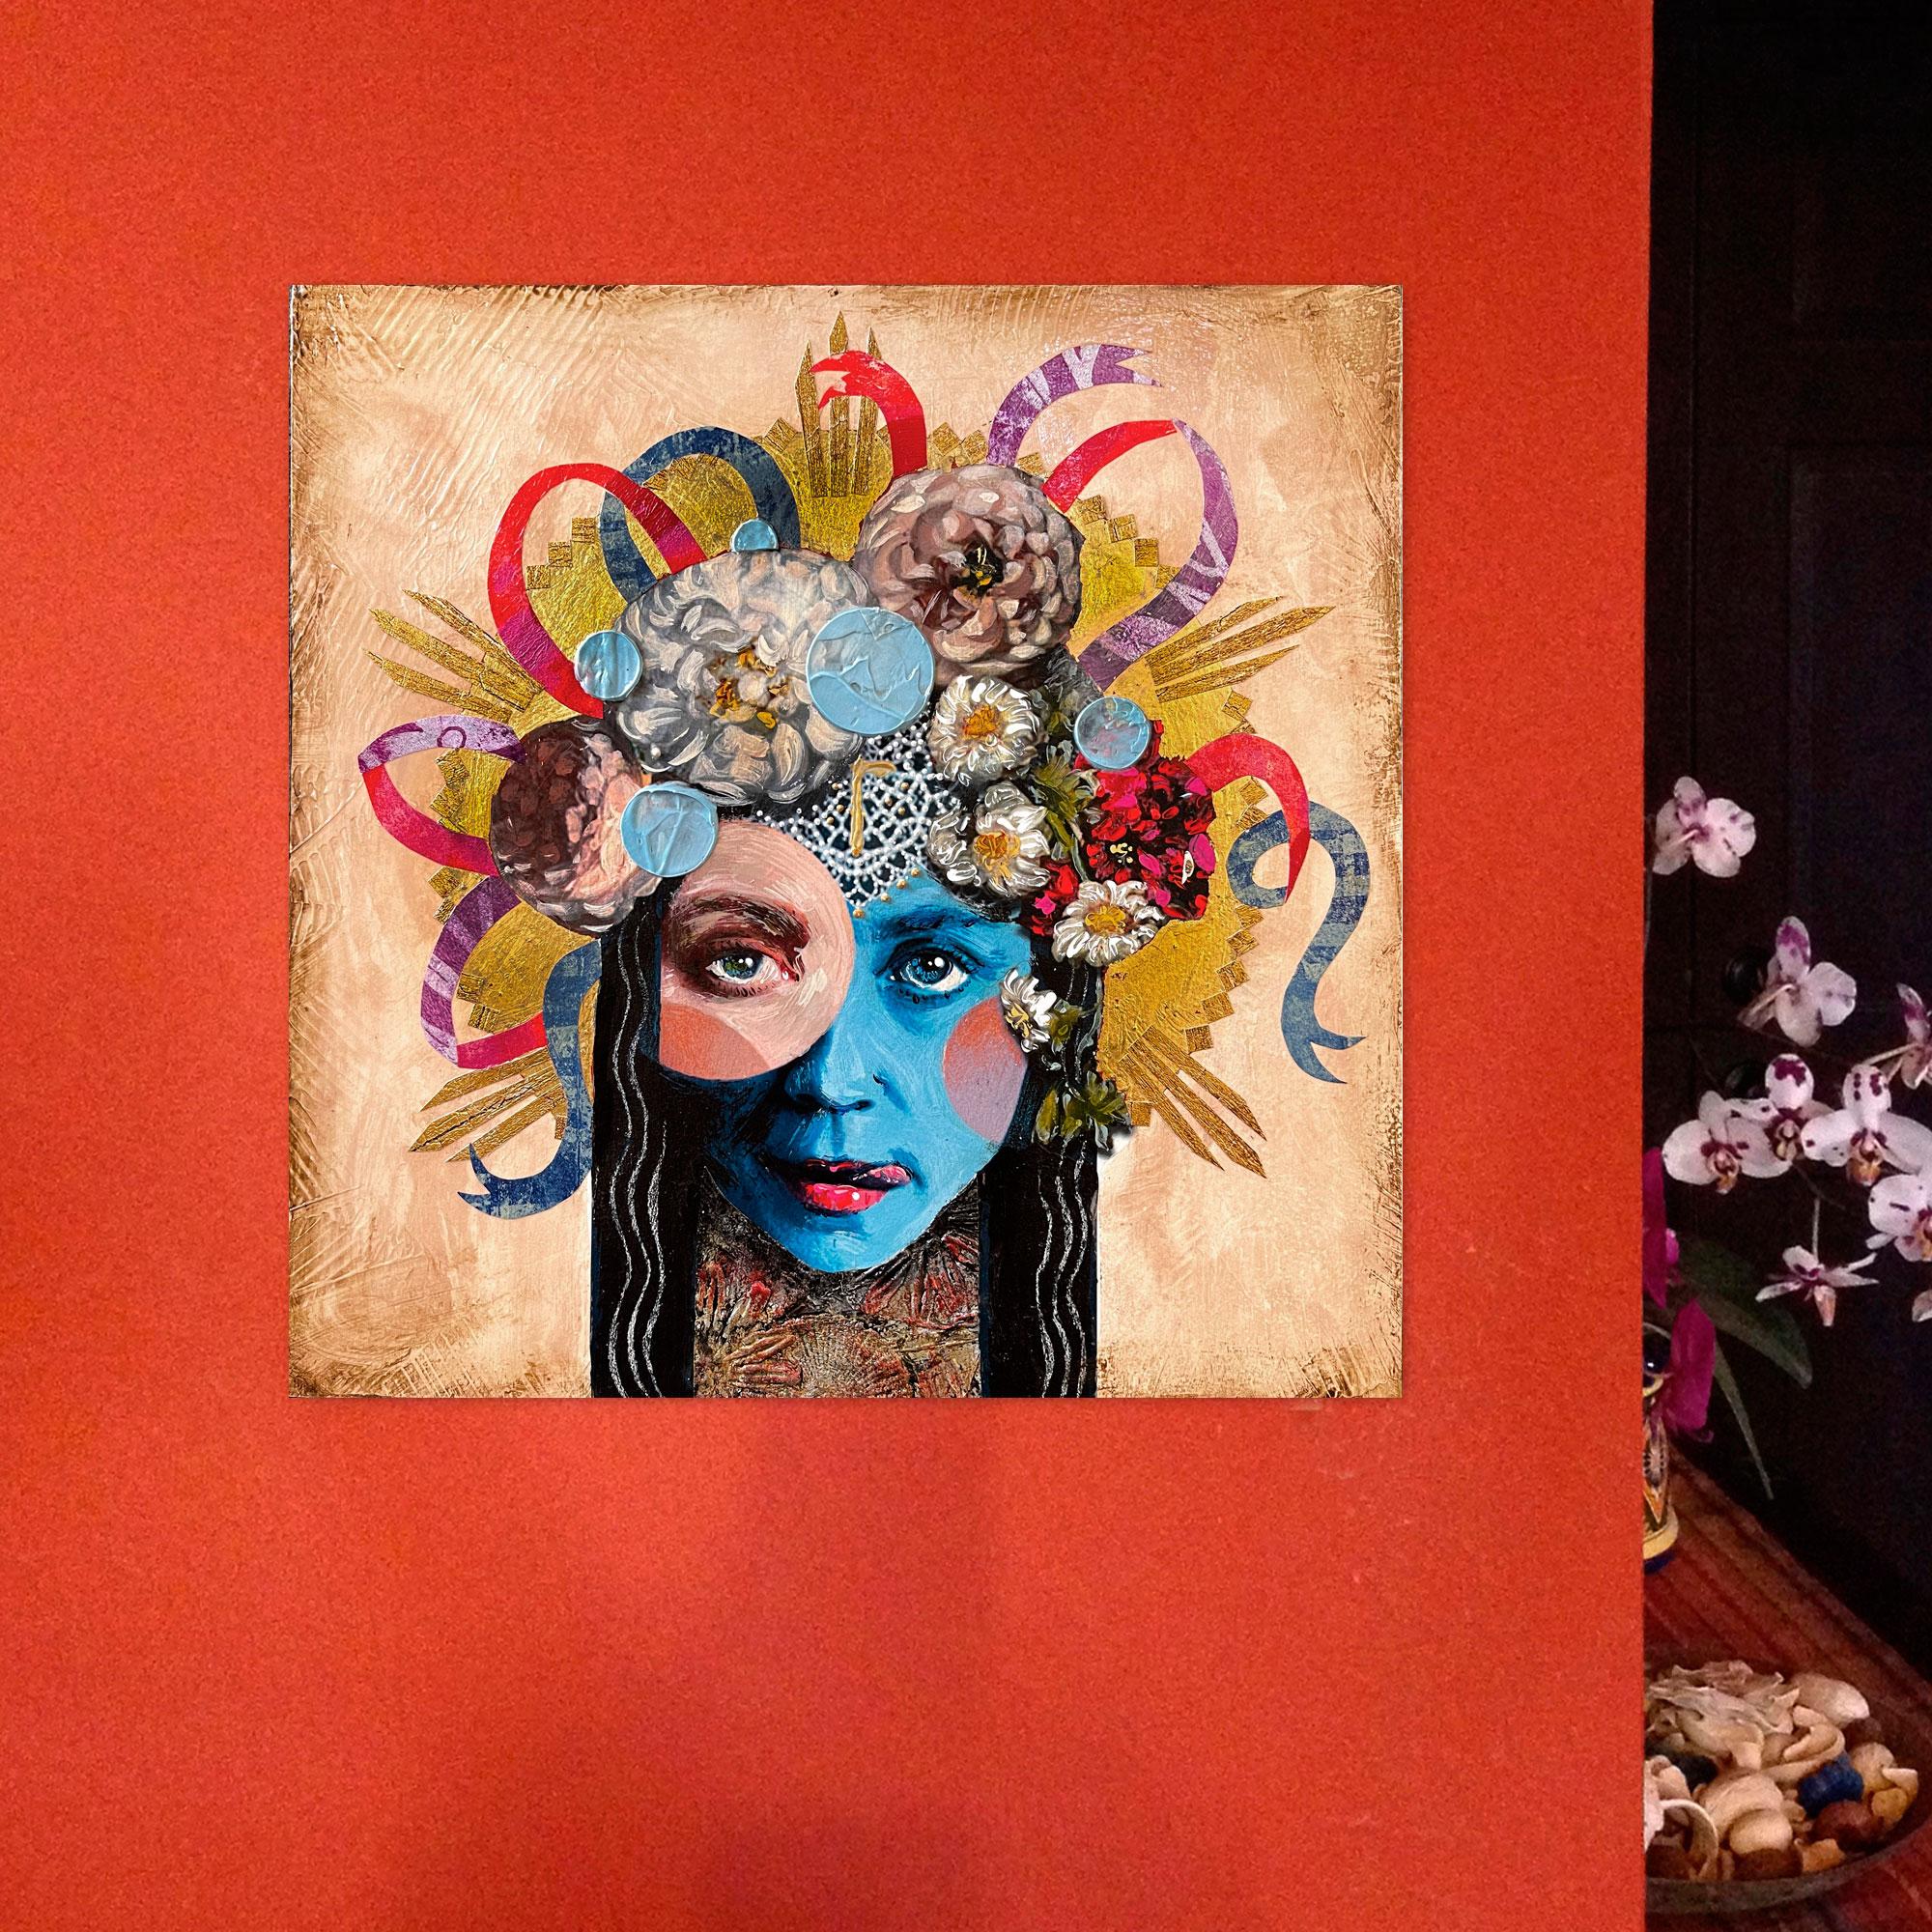 <p>Kommentare des Künstlers<br>In dem expressionistischen Porträt der Künstlerin Darlene McElroy ruht eine verzierte Blumenkrone auf dem Kopf eines jungen Mädchens. 